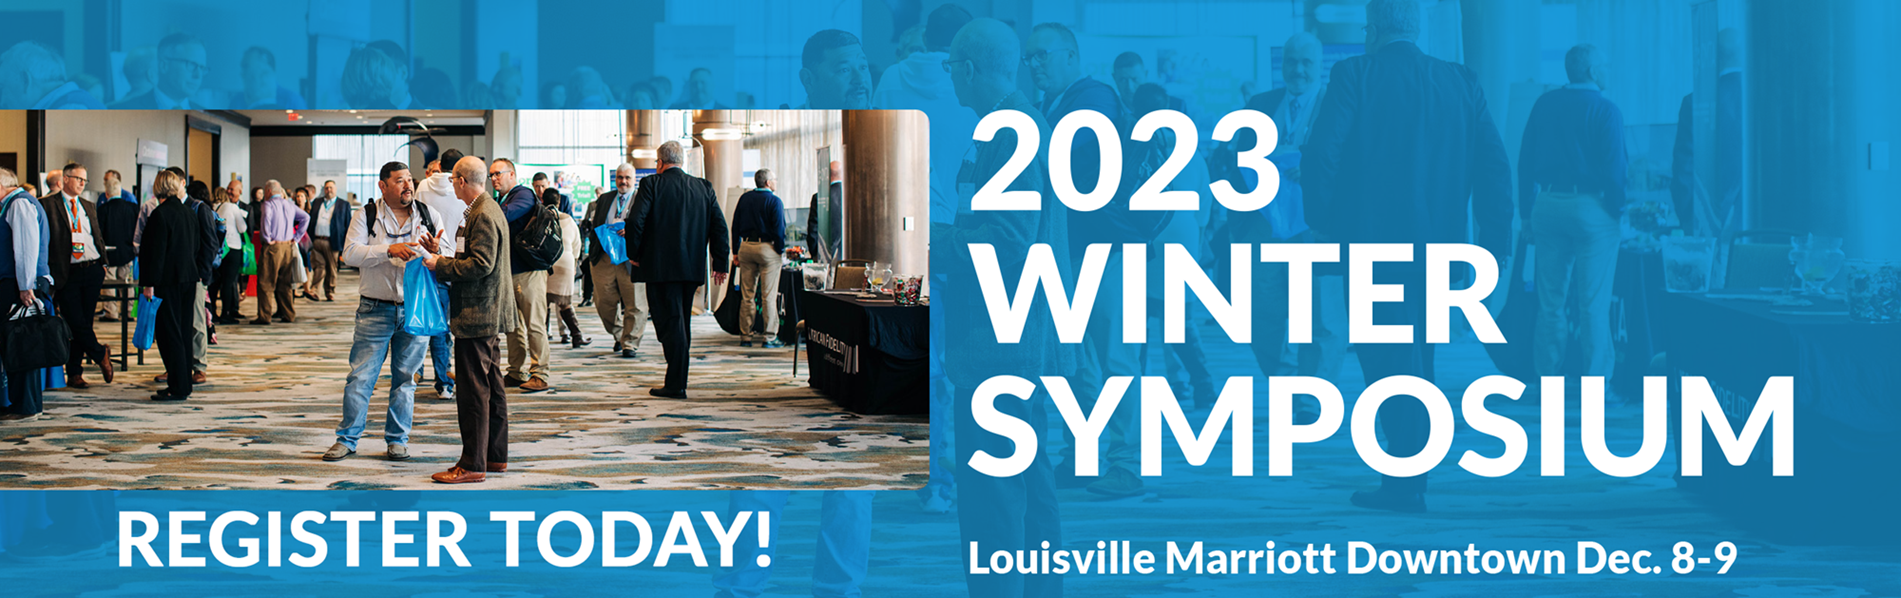 2023 KSBA Winter Symposium Dec. 8-9 in Louisville registration now open